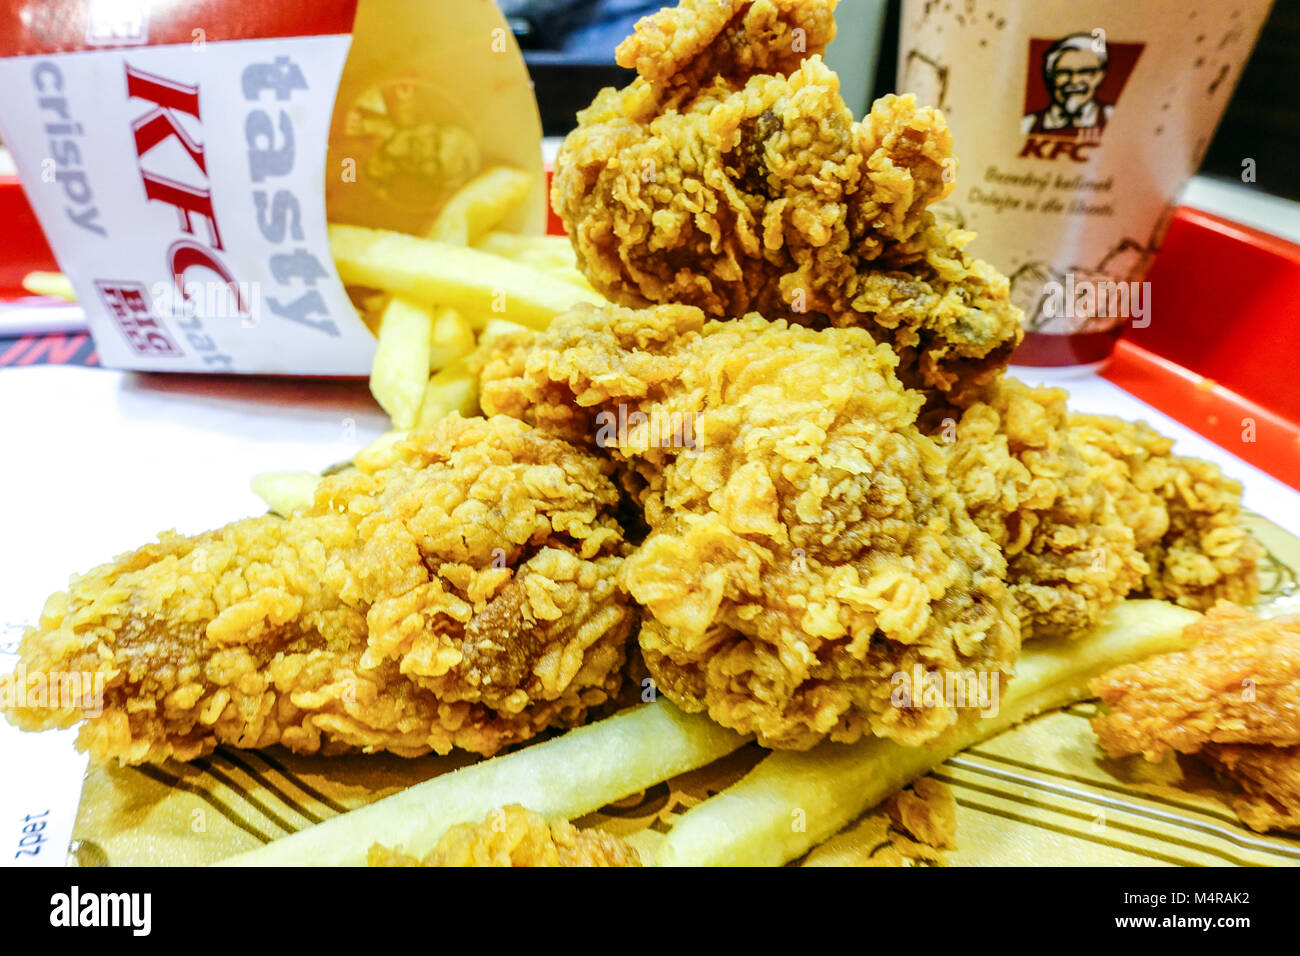 KFC-Menü, gebraten, Kentucky Fried Chicken, Essen, Hot Wings Stockfoto